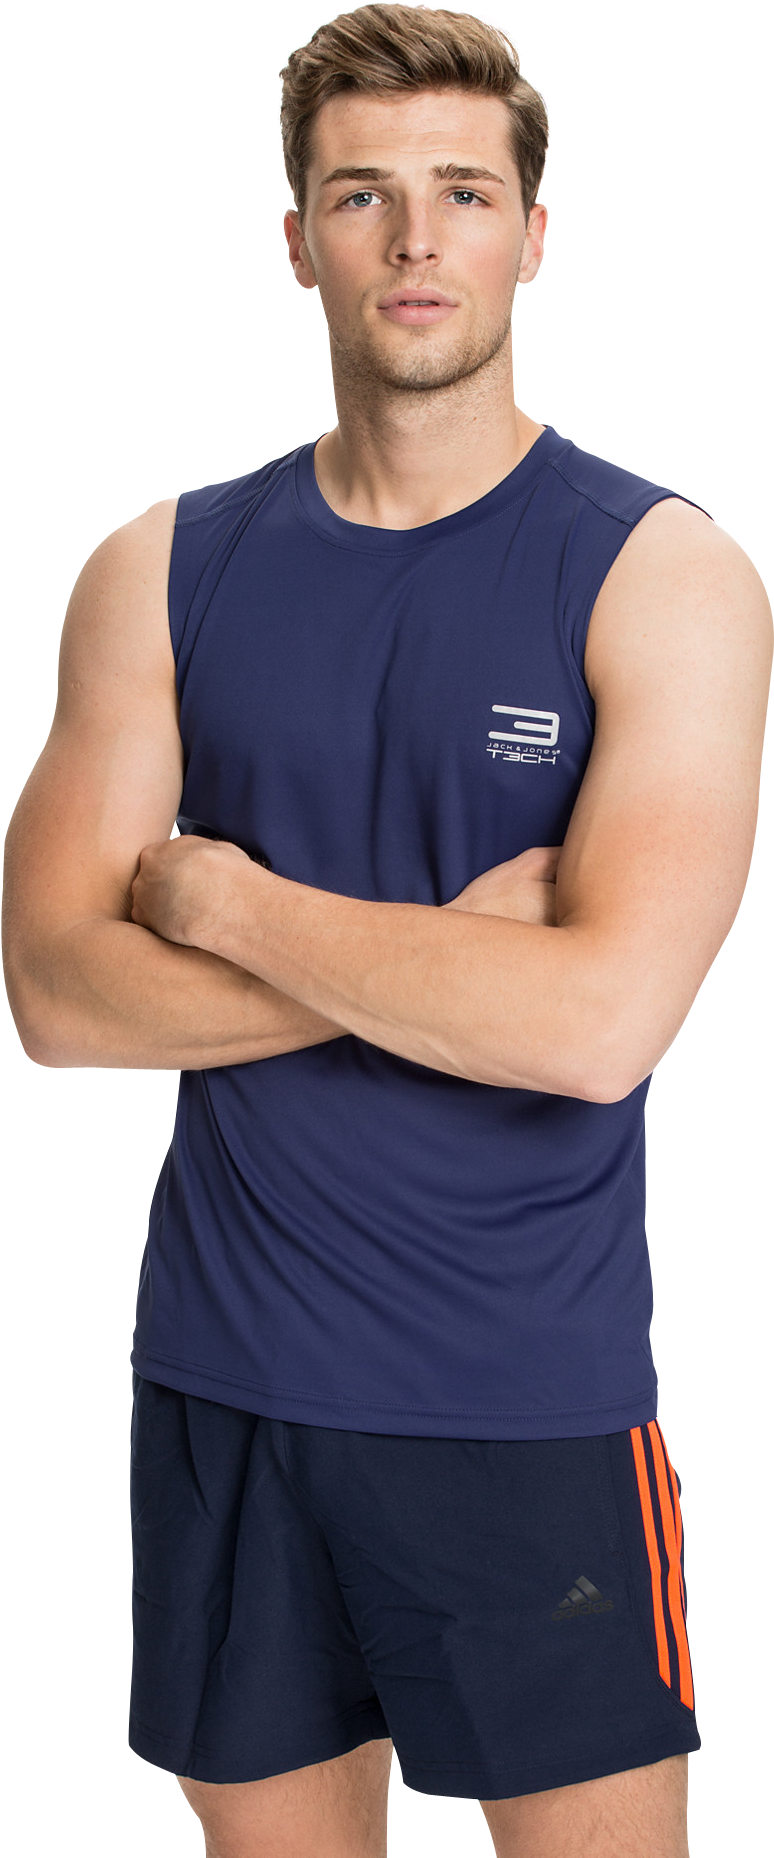 Download PNG image - Slim Fitness Man Transparent PNG 